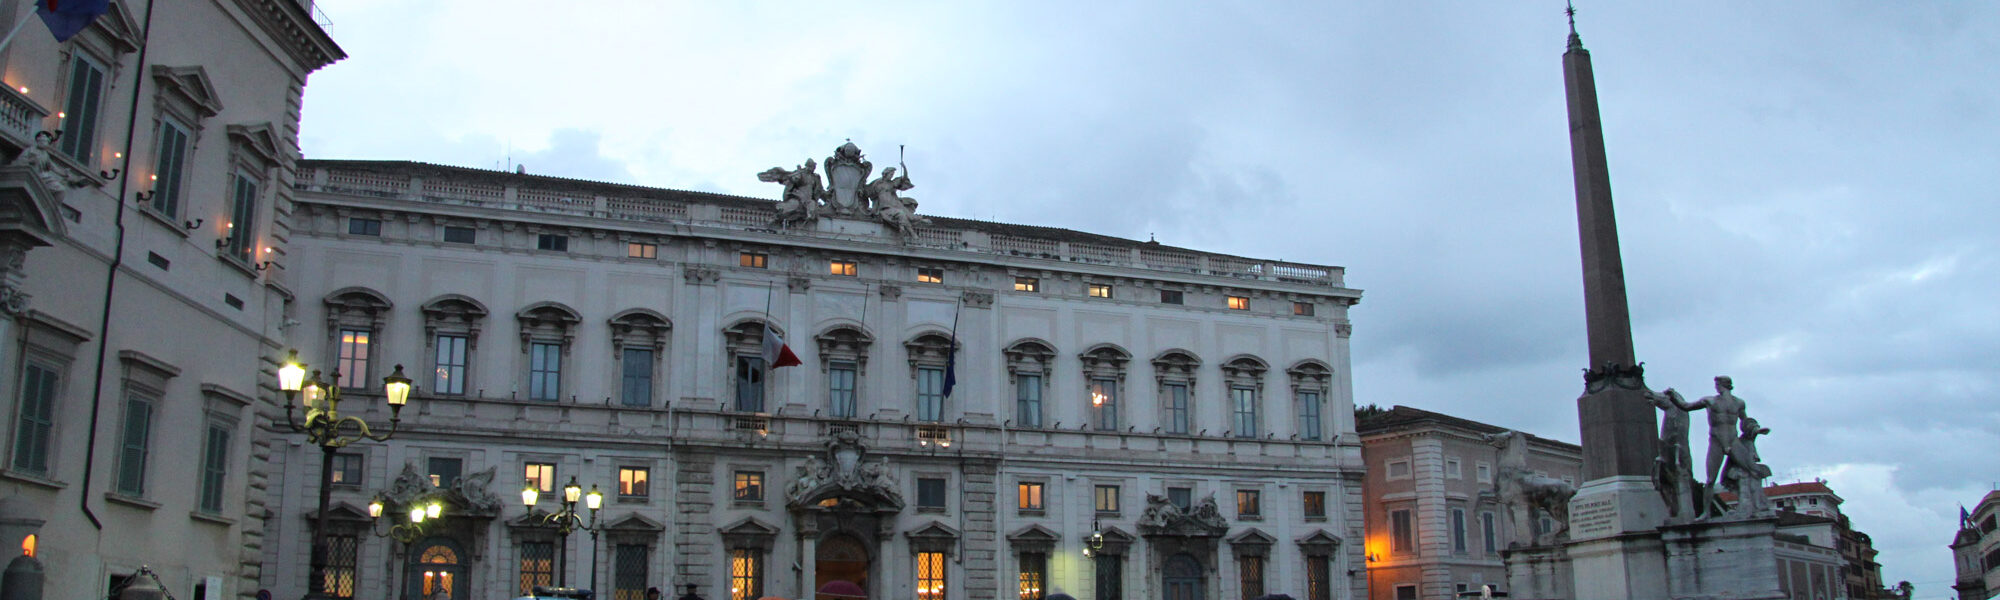 Palazzo del Quirinale - Rome - Italië